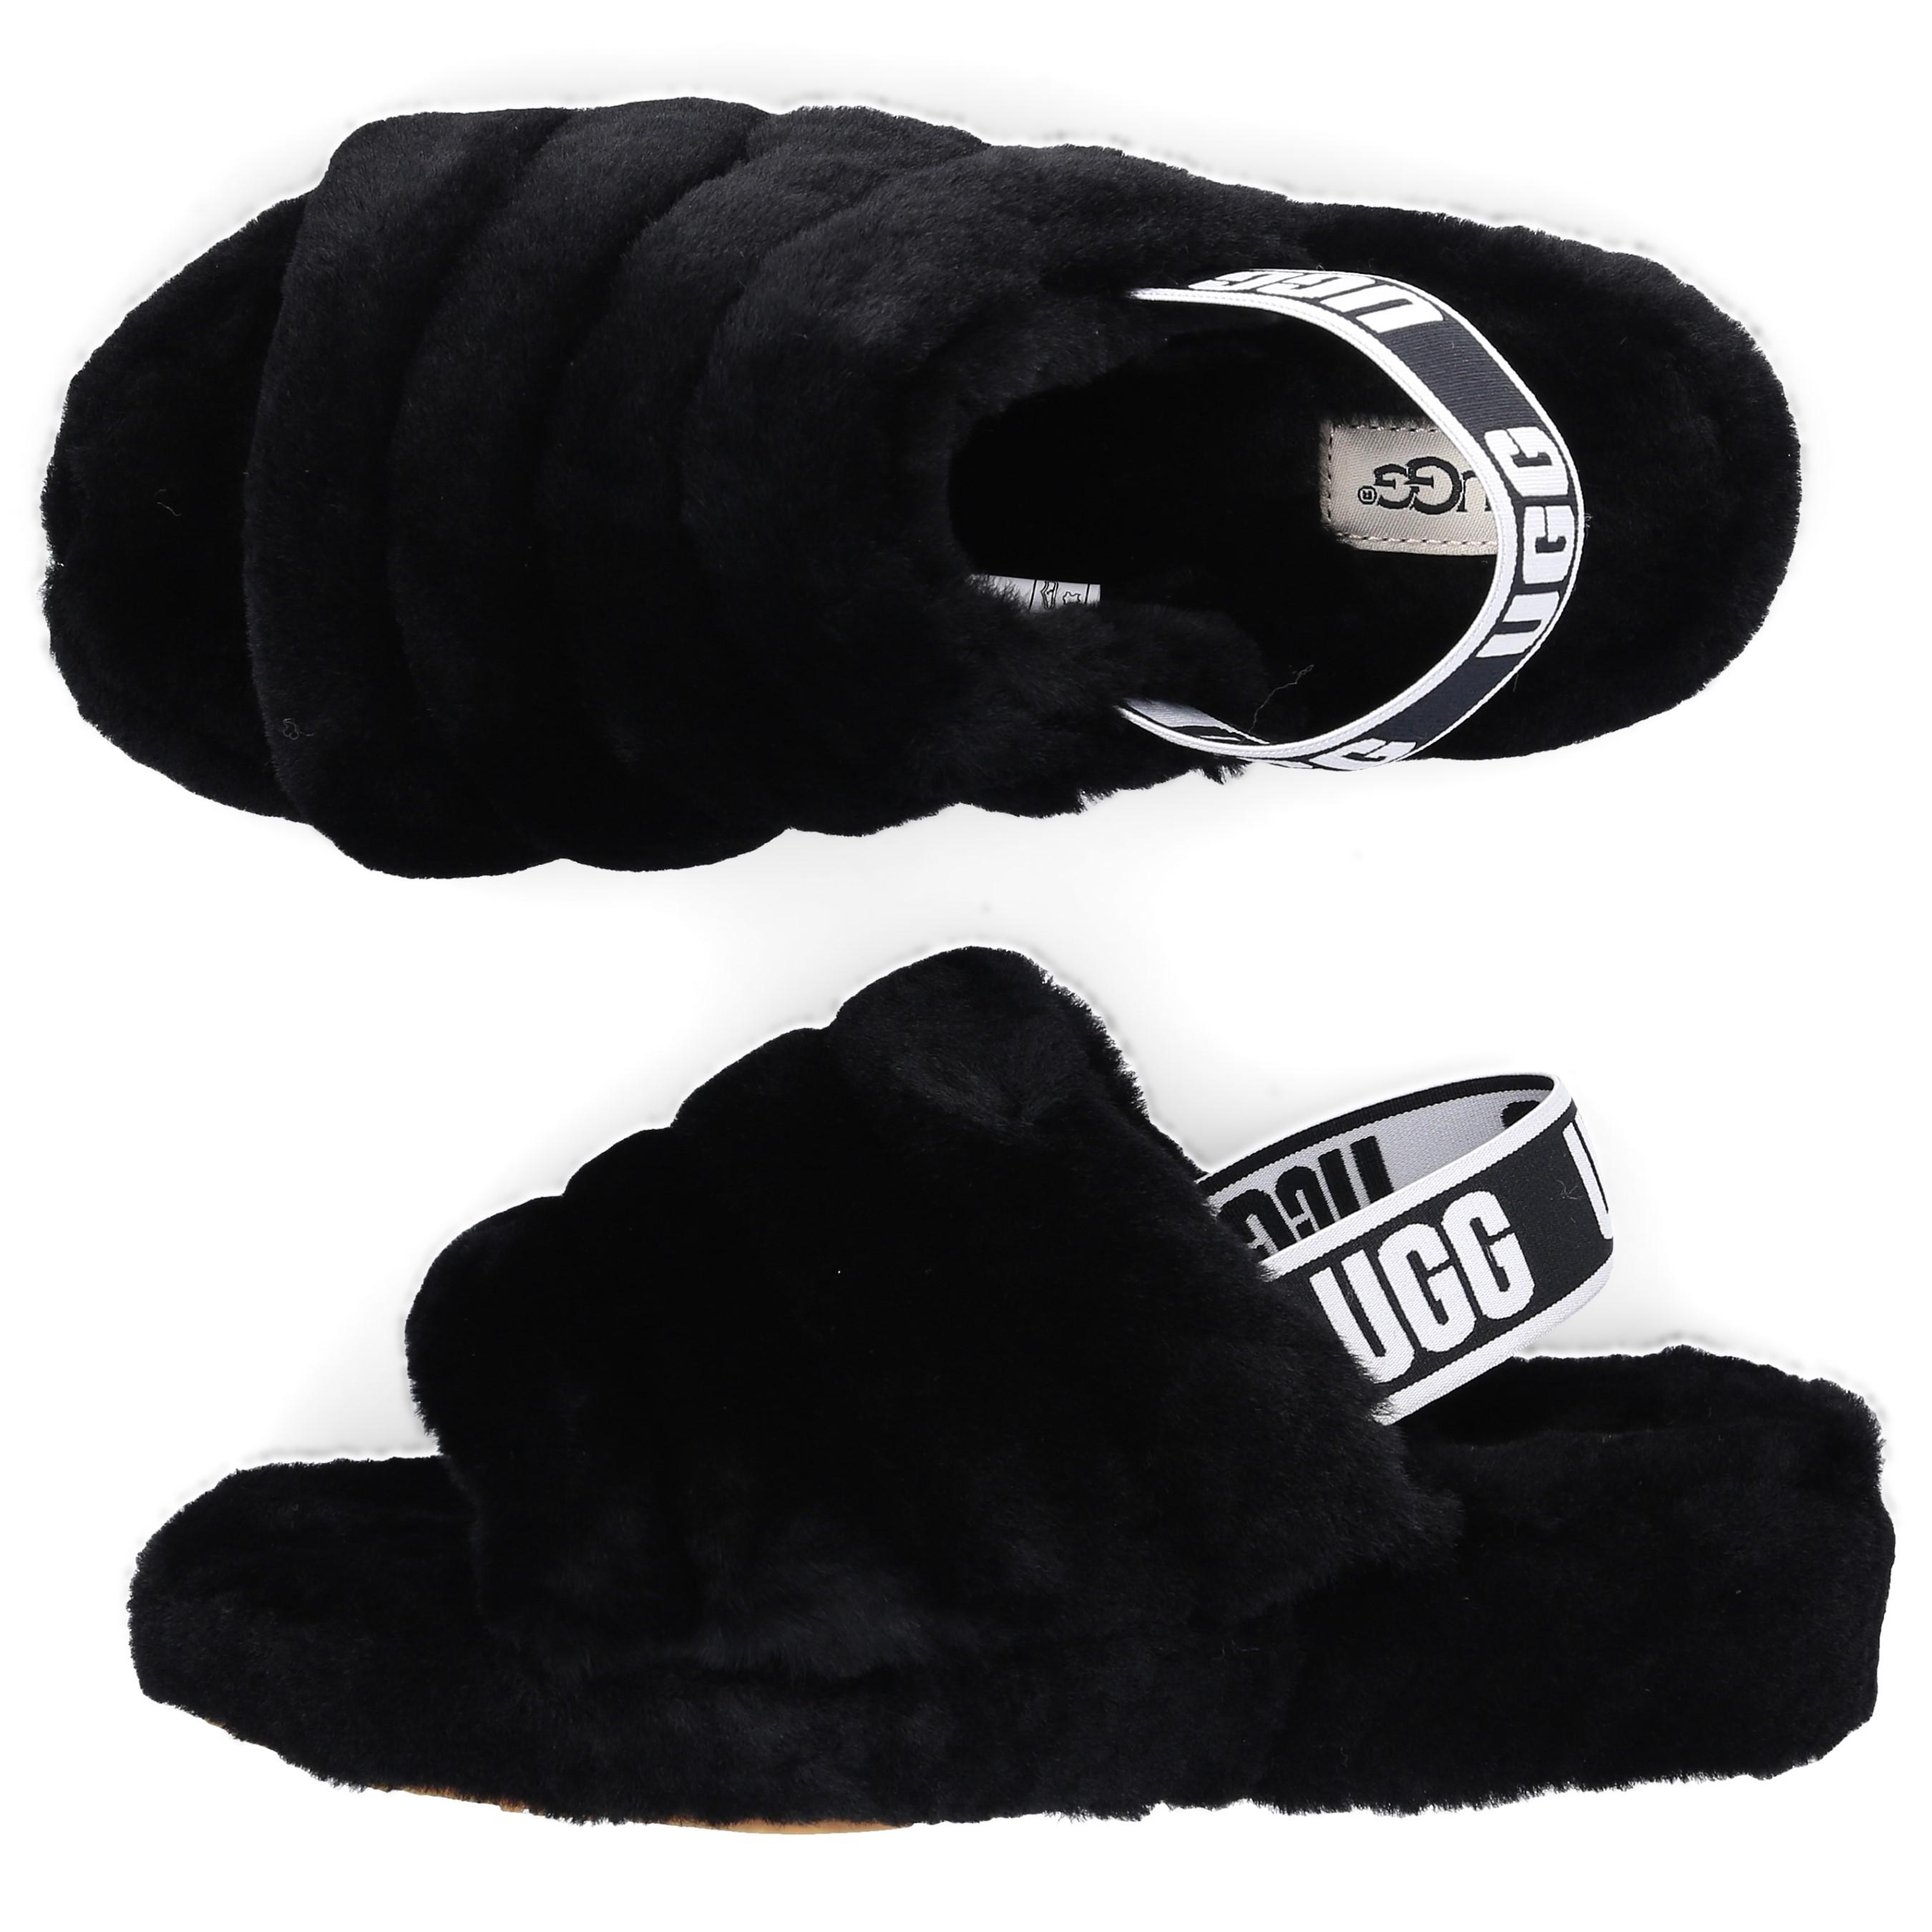 UGG Fur Slippers Yeah Slide in Black - Lyst